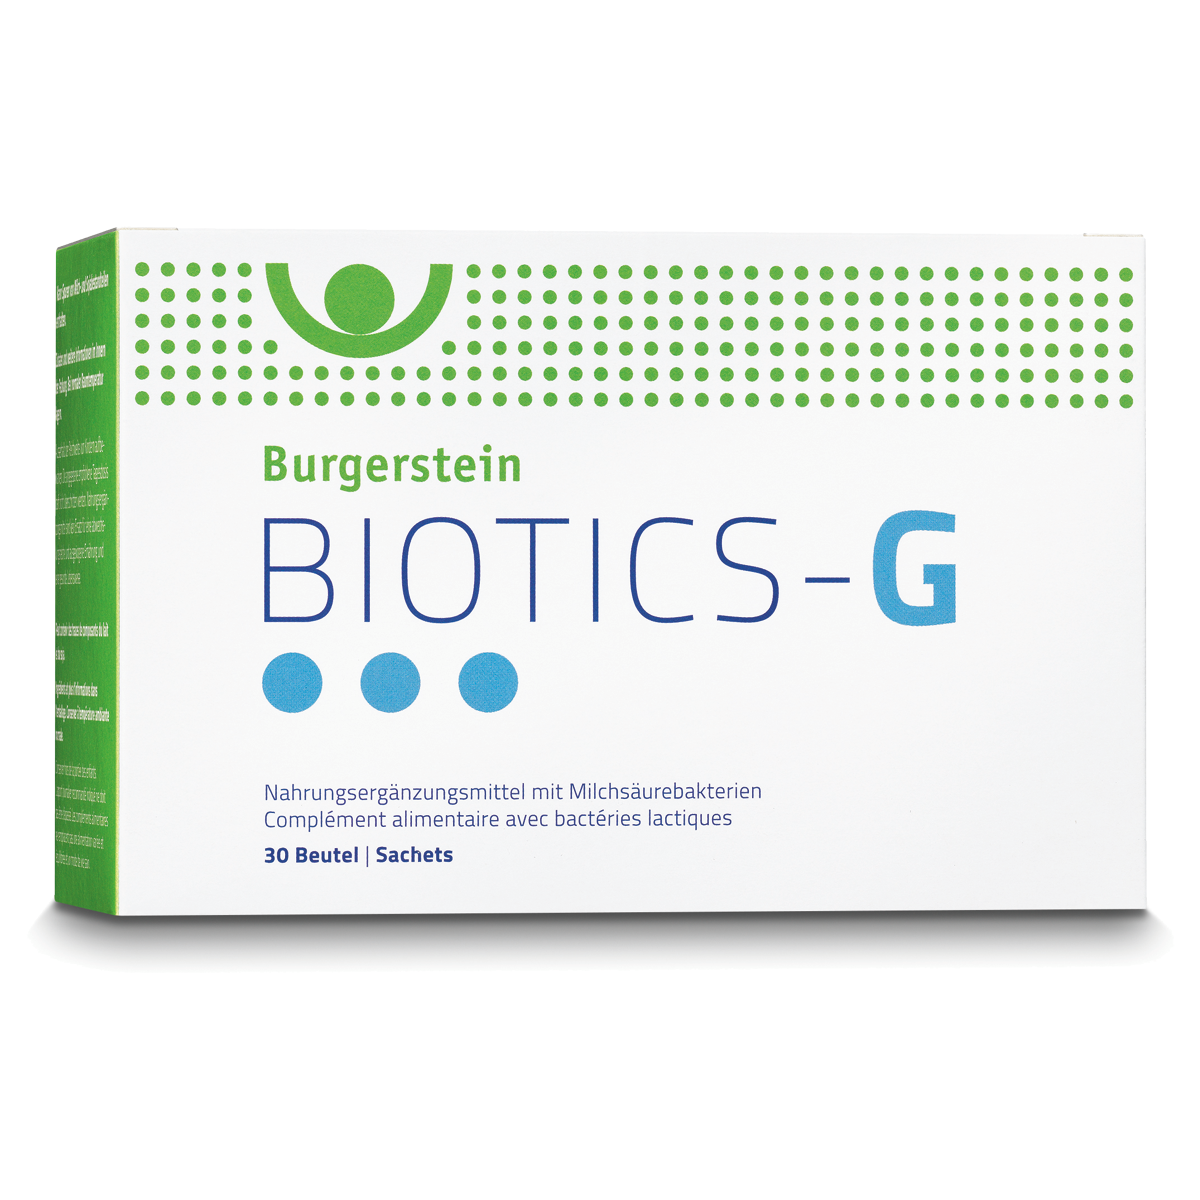 Burgerstein Biotics-G 30 Beutel